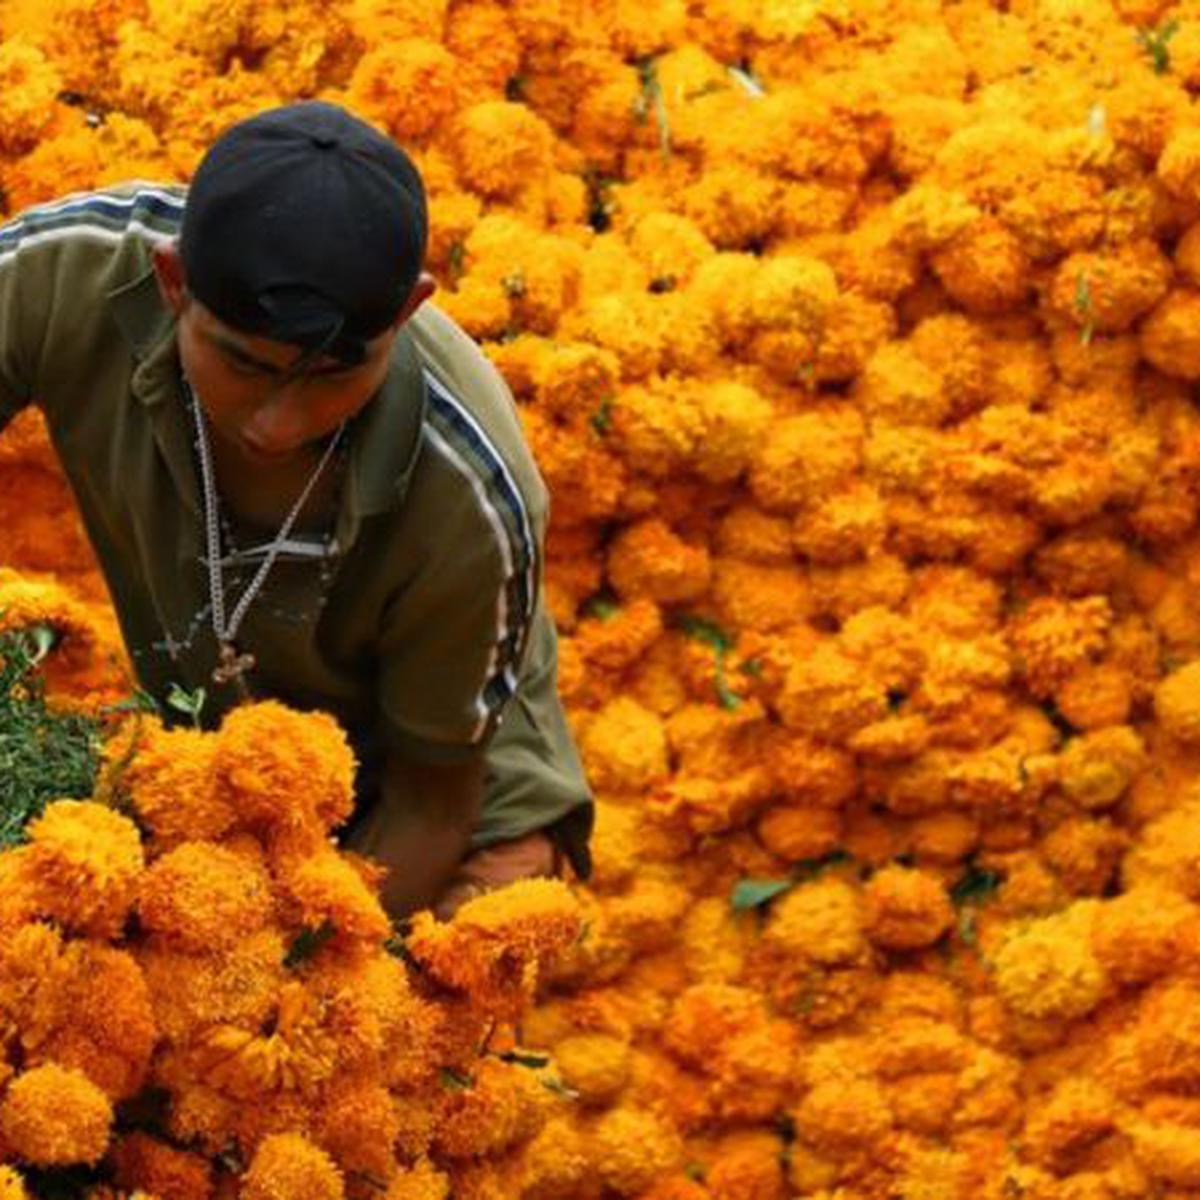 Cempasúchil, la flor del Día de Muertos: significado y para qué sirve |  Ofrendas | México | Día de los difuntos | Flor de 20 pétalos | RESPUESTAS |  EL COMERCIO PERÚ